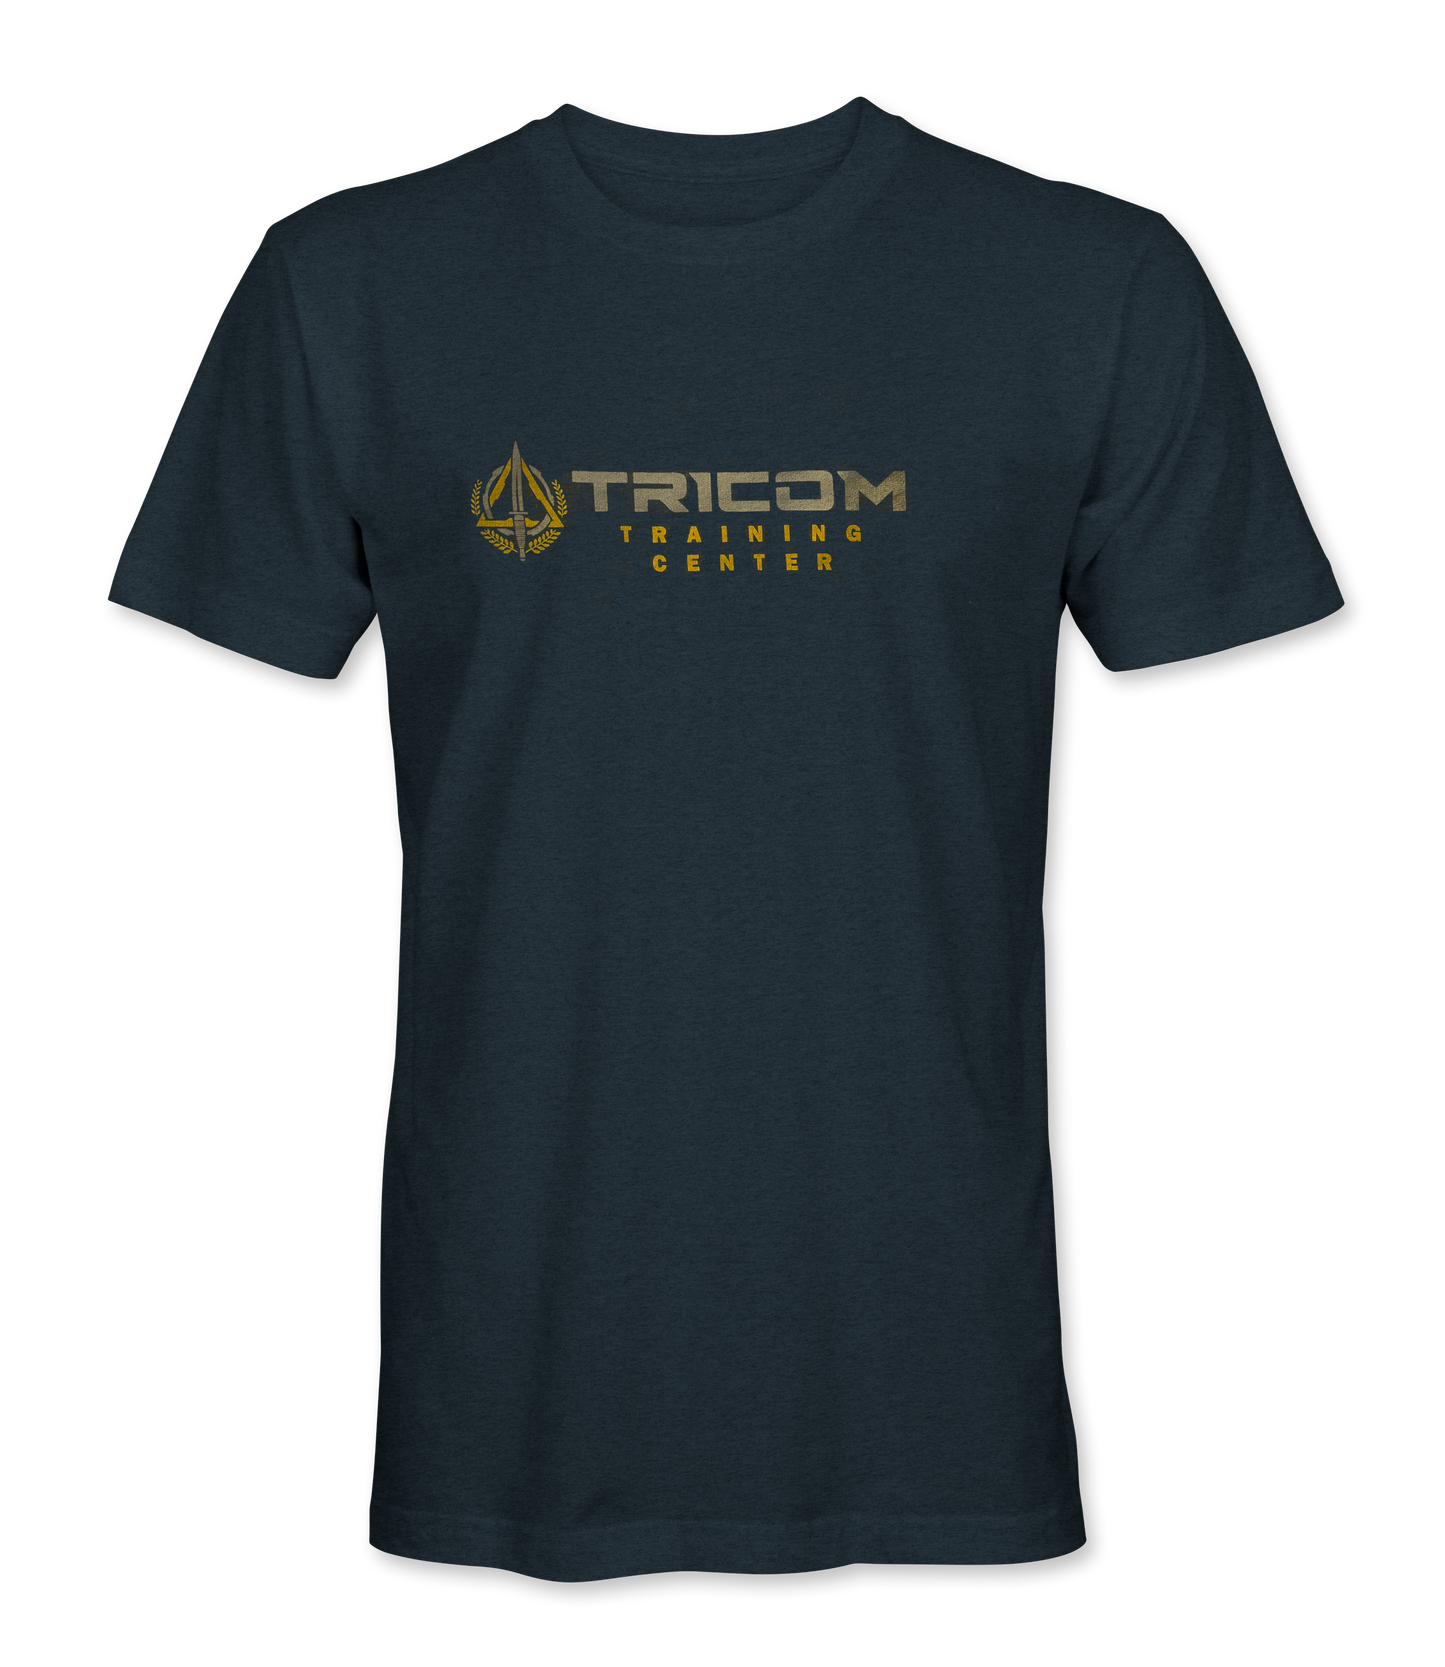 TRICOM Training Center Shirt (Screen Printed)